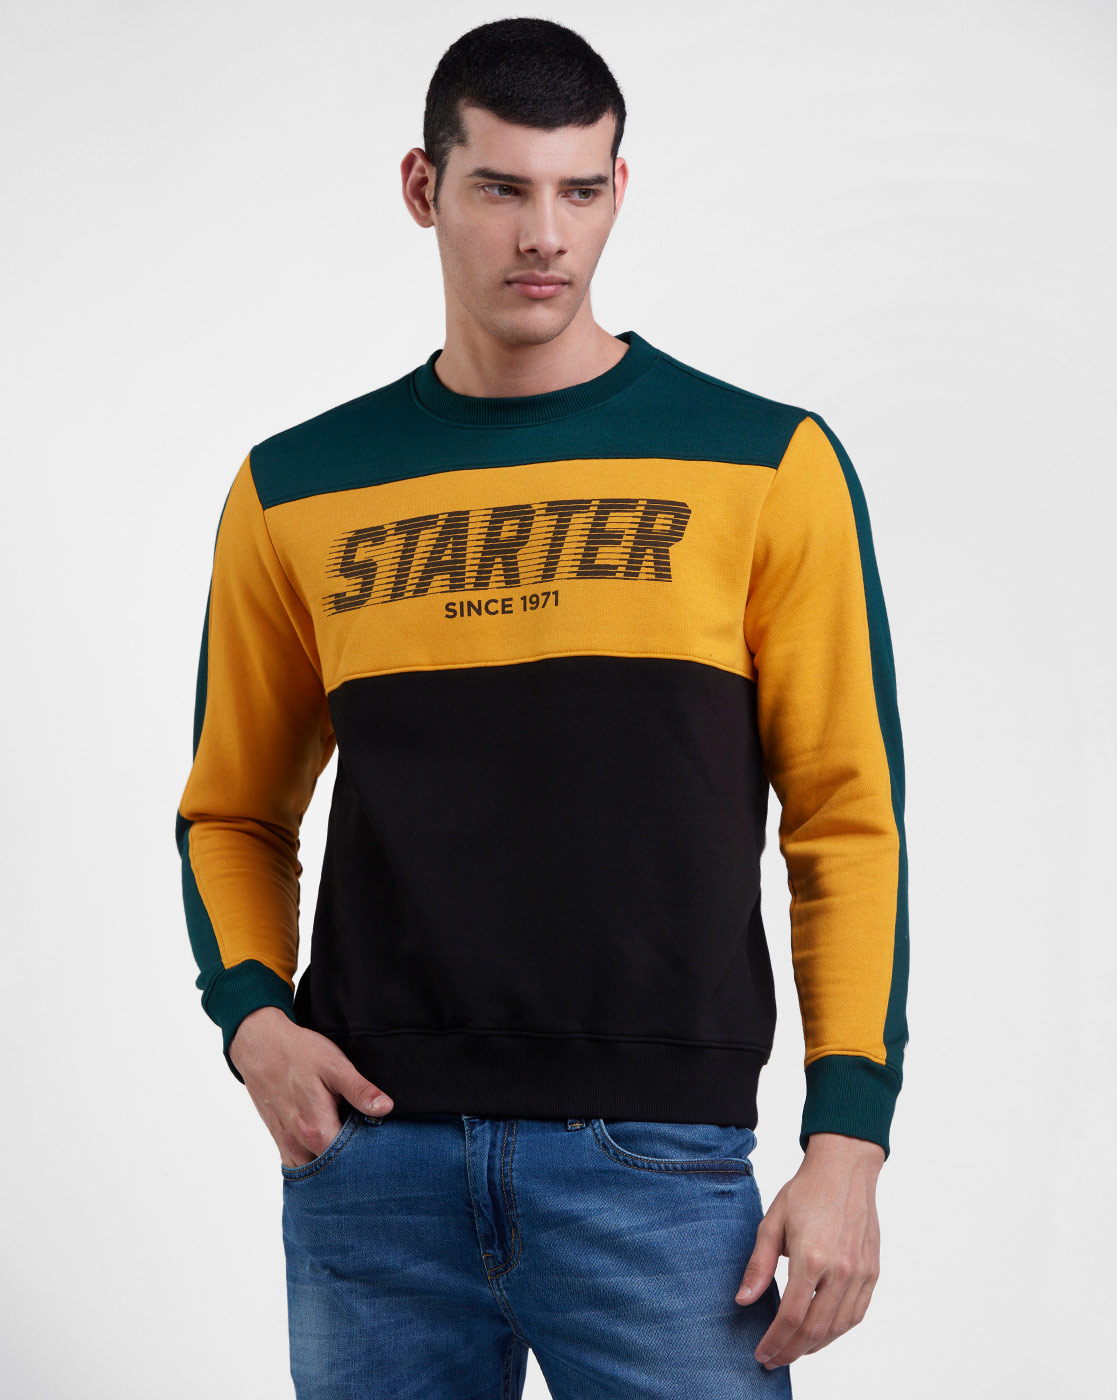 Starter Men Color Block Yellow Sweatshirt